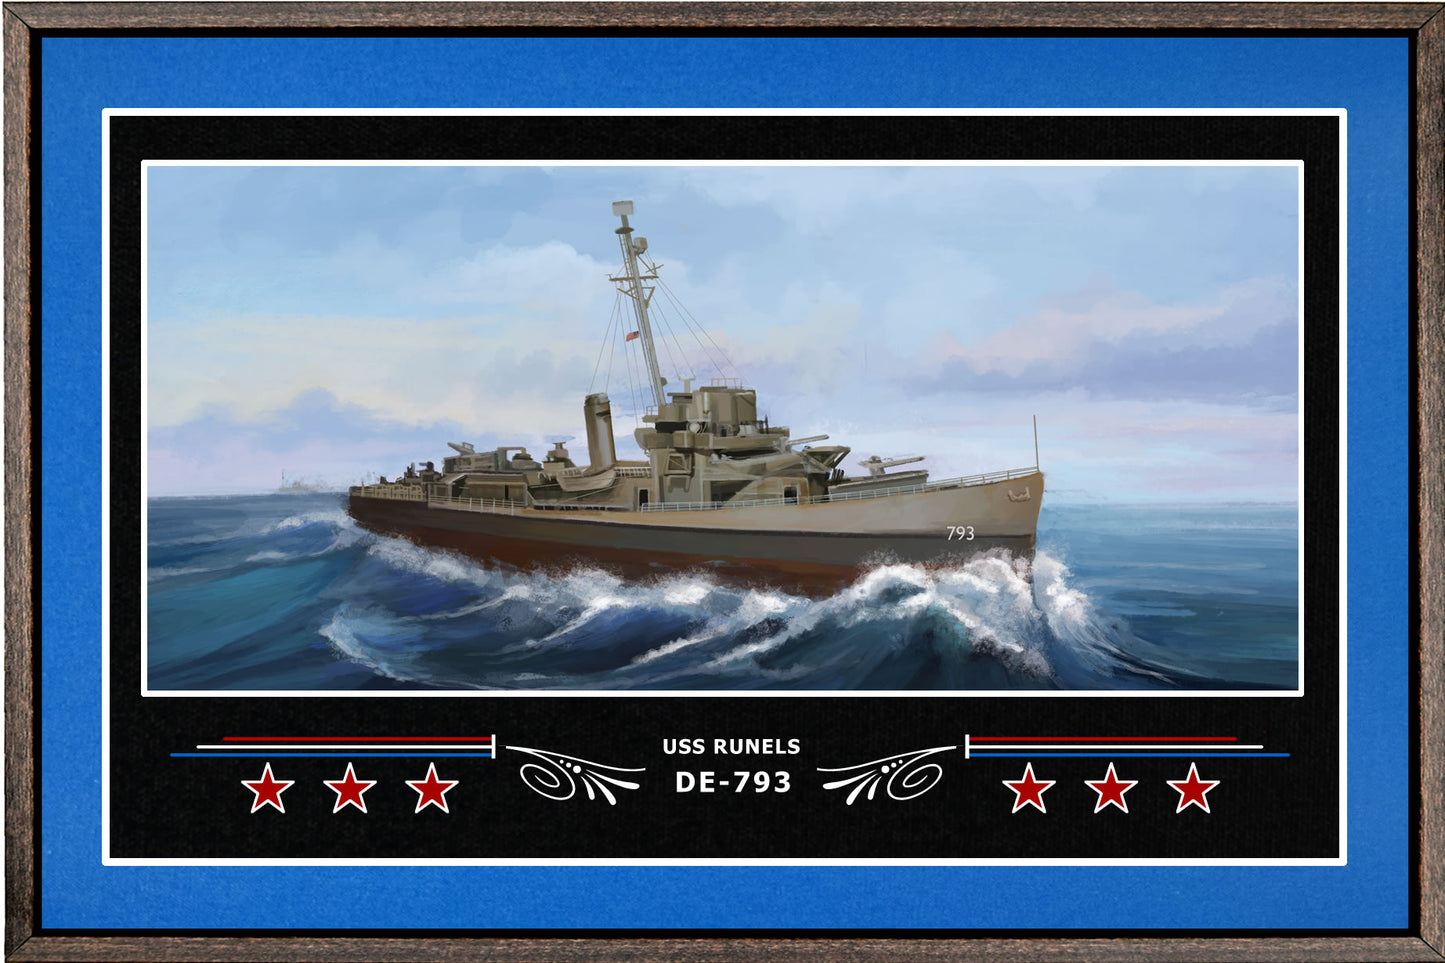 USS RUNELS DE 793 BOX FRAMED CANVAS ART BLUE